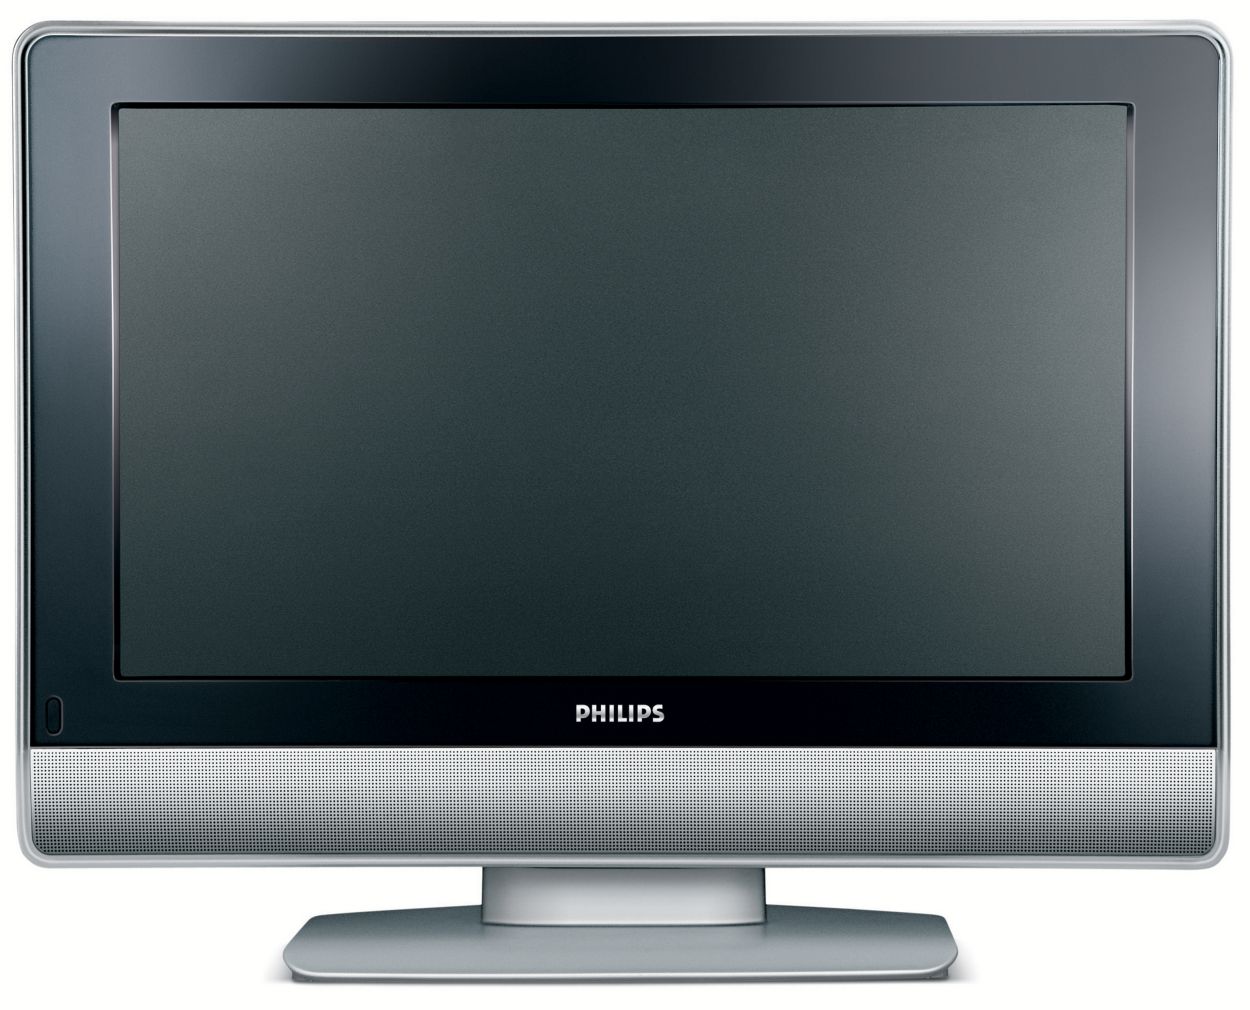 Филипс г. Philips 26pf7321. Телевизор Philips 26pf7521d. Телевизор Philips 50pf7321. Телевизор 26 дюйма Филипс.